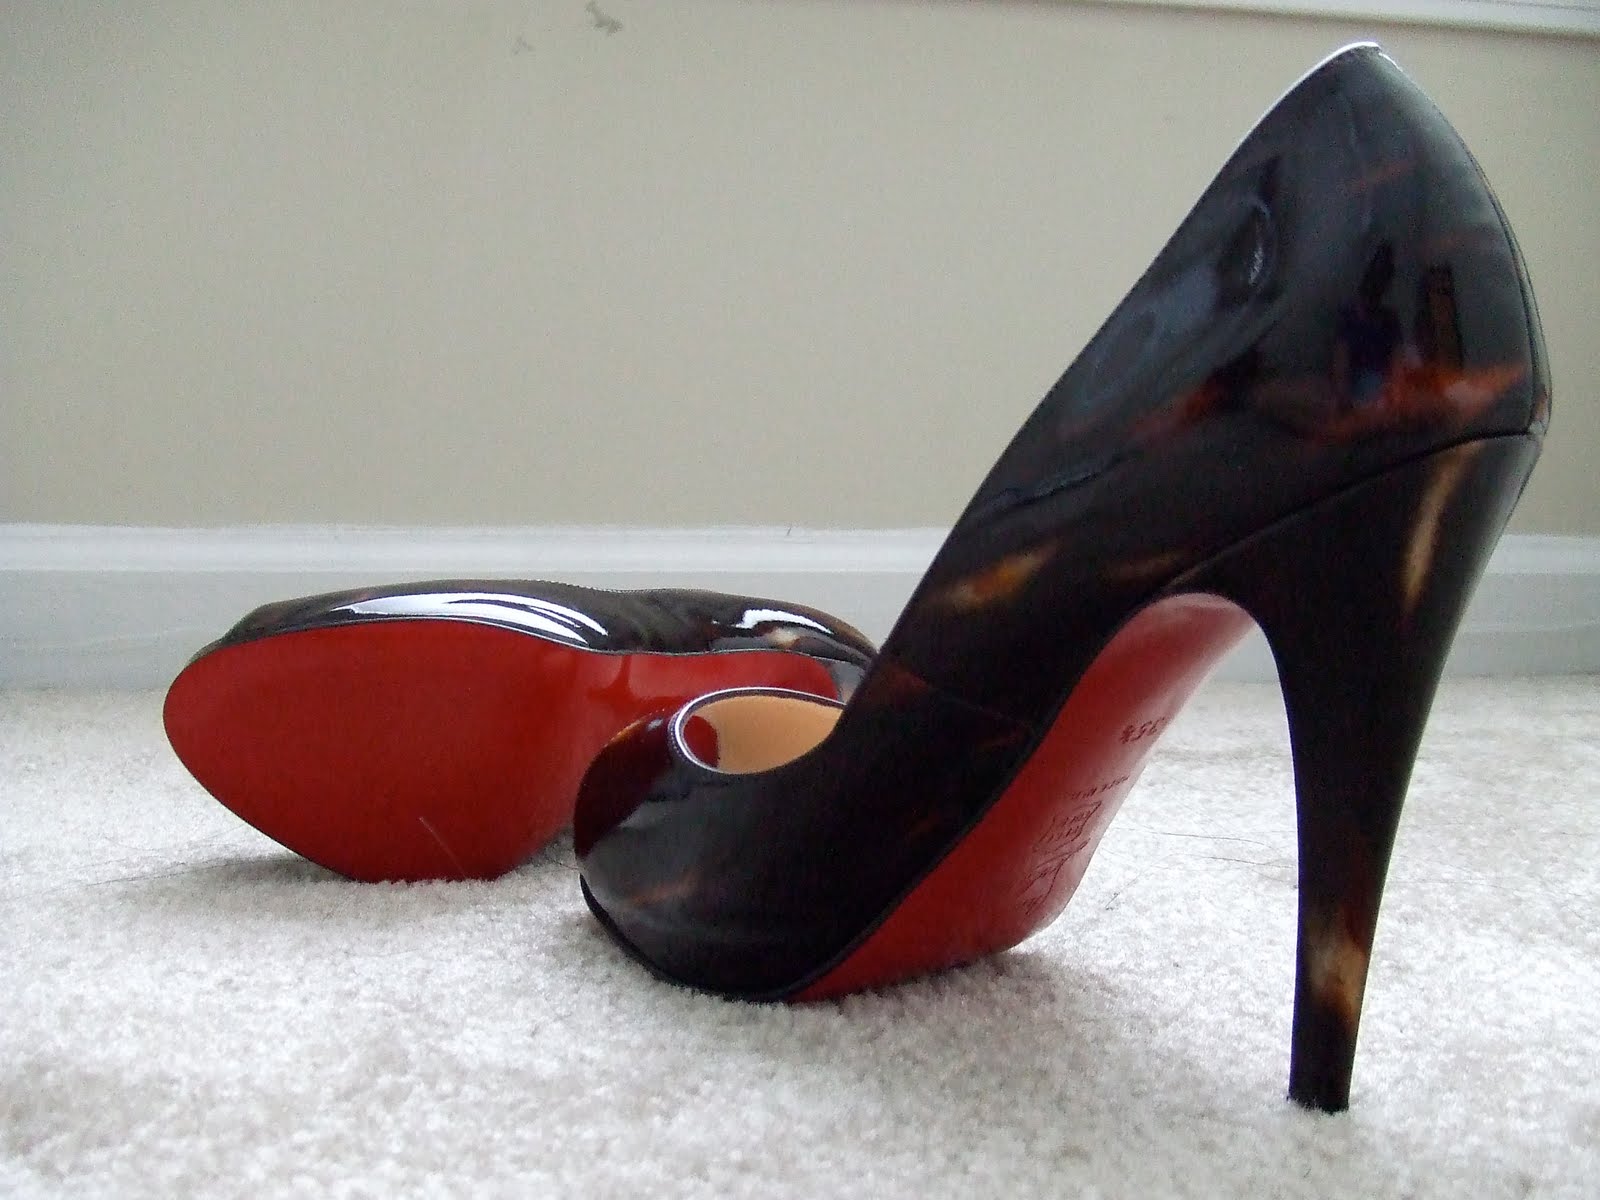 Shoe Heaven: Christian Louboutin - High Heel, Red Sole